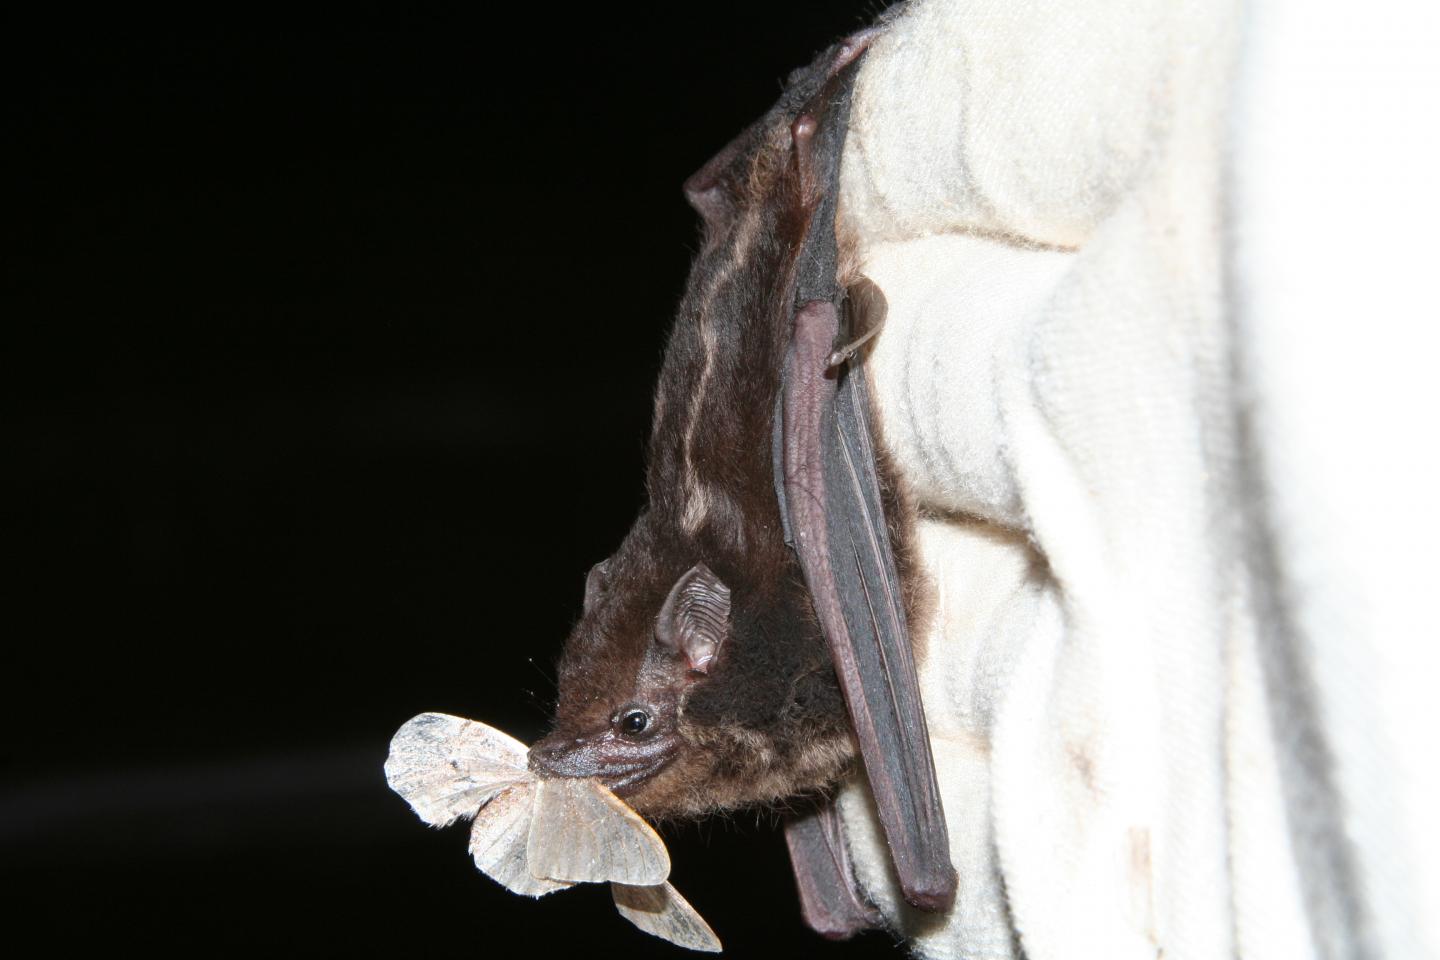 Bat in Panama